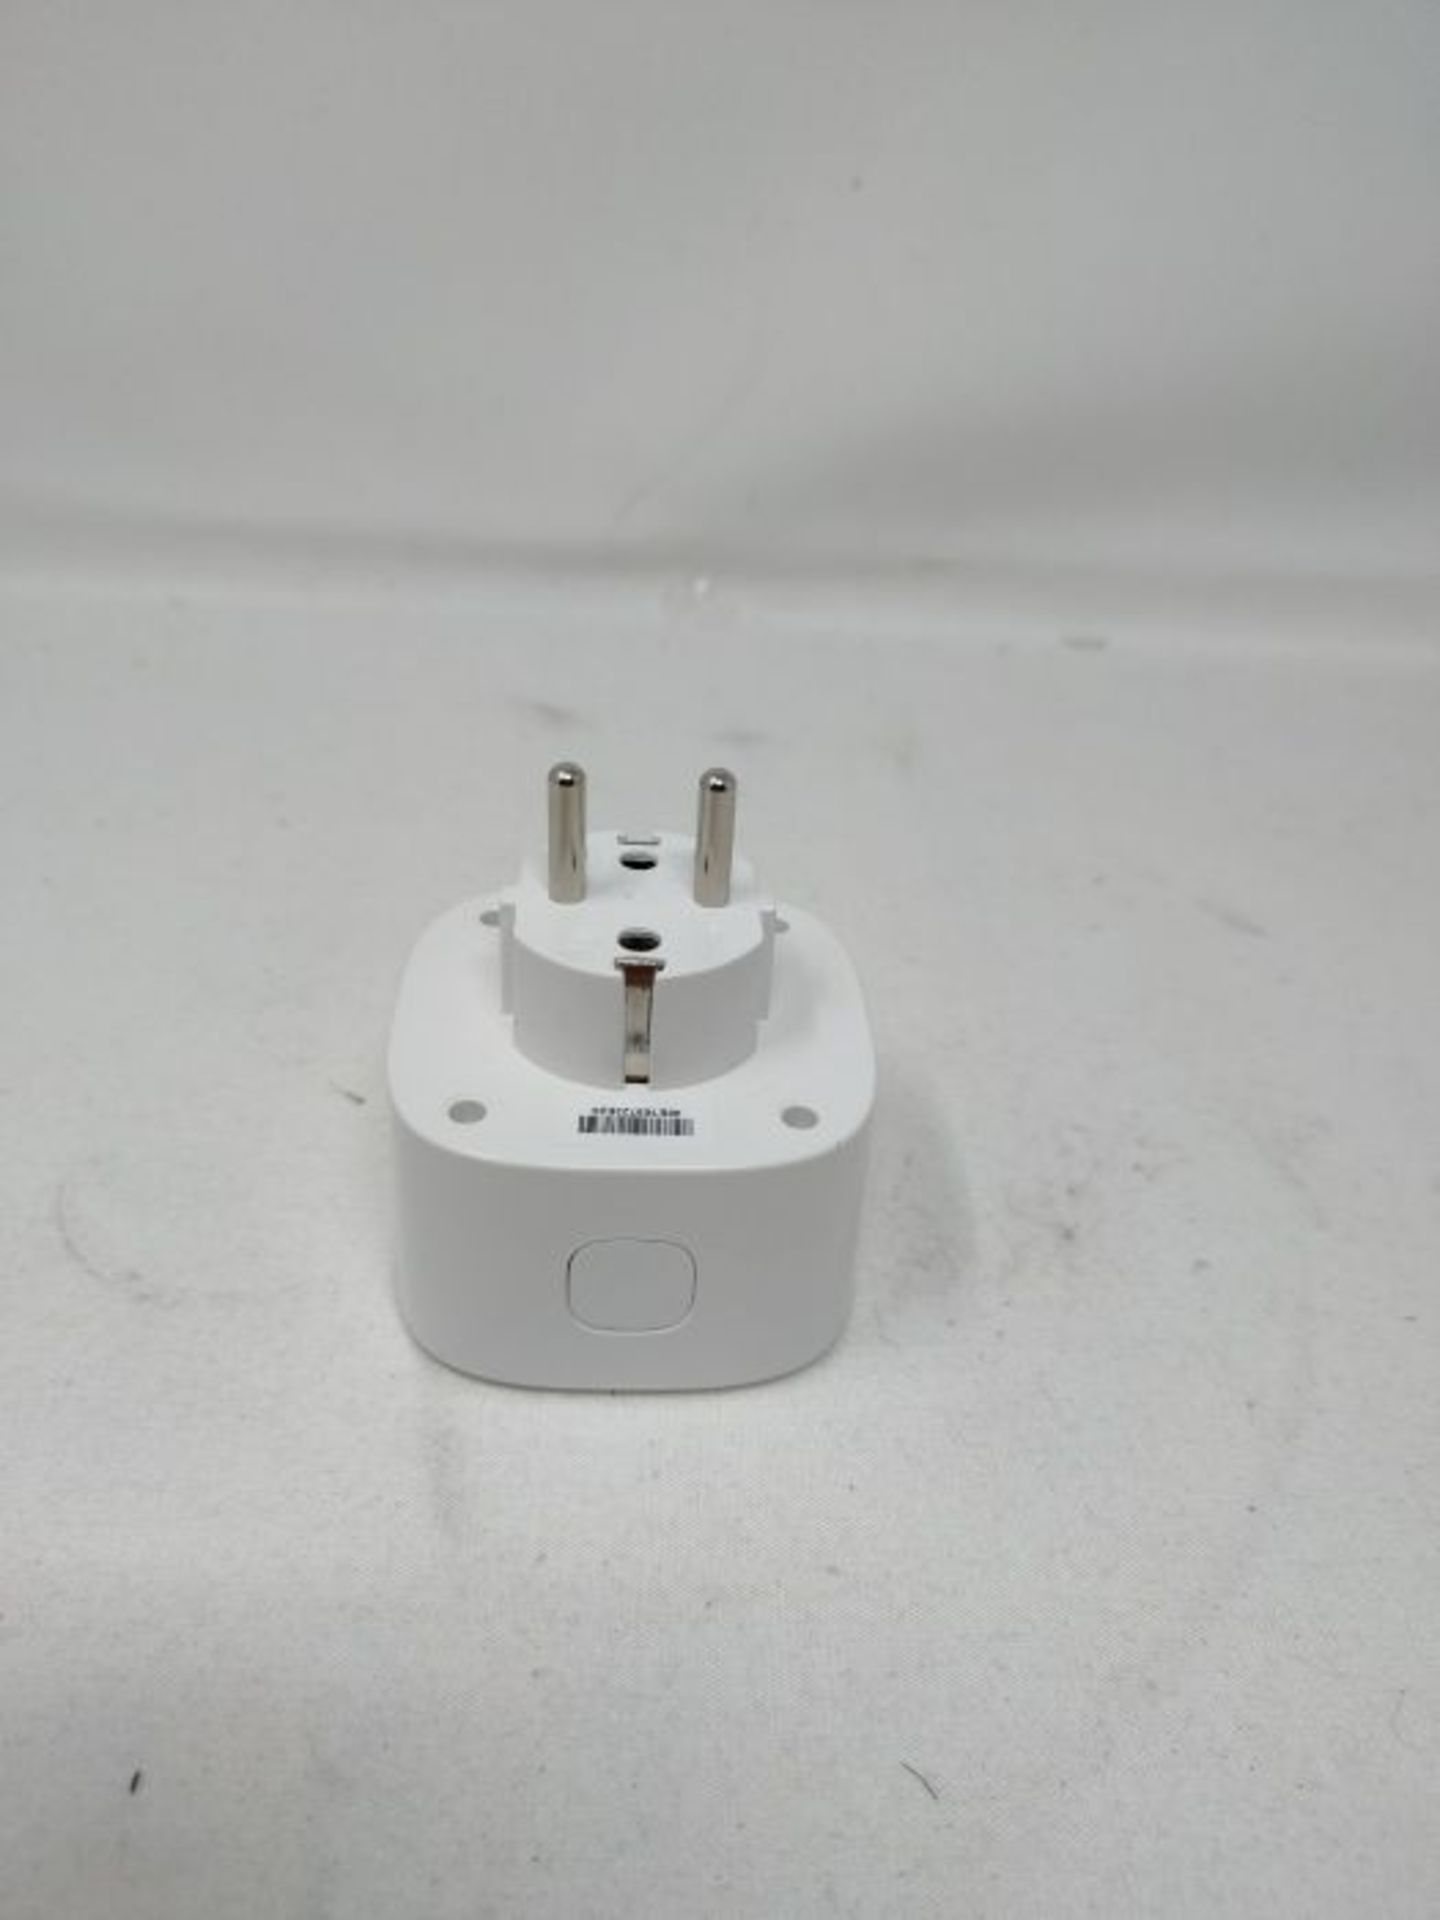 WLAN socket works with Apple HomeKit, meross Smart Plug, compatible with Siri, Alexa, - Image 2 of 4